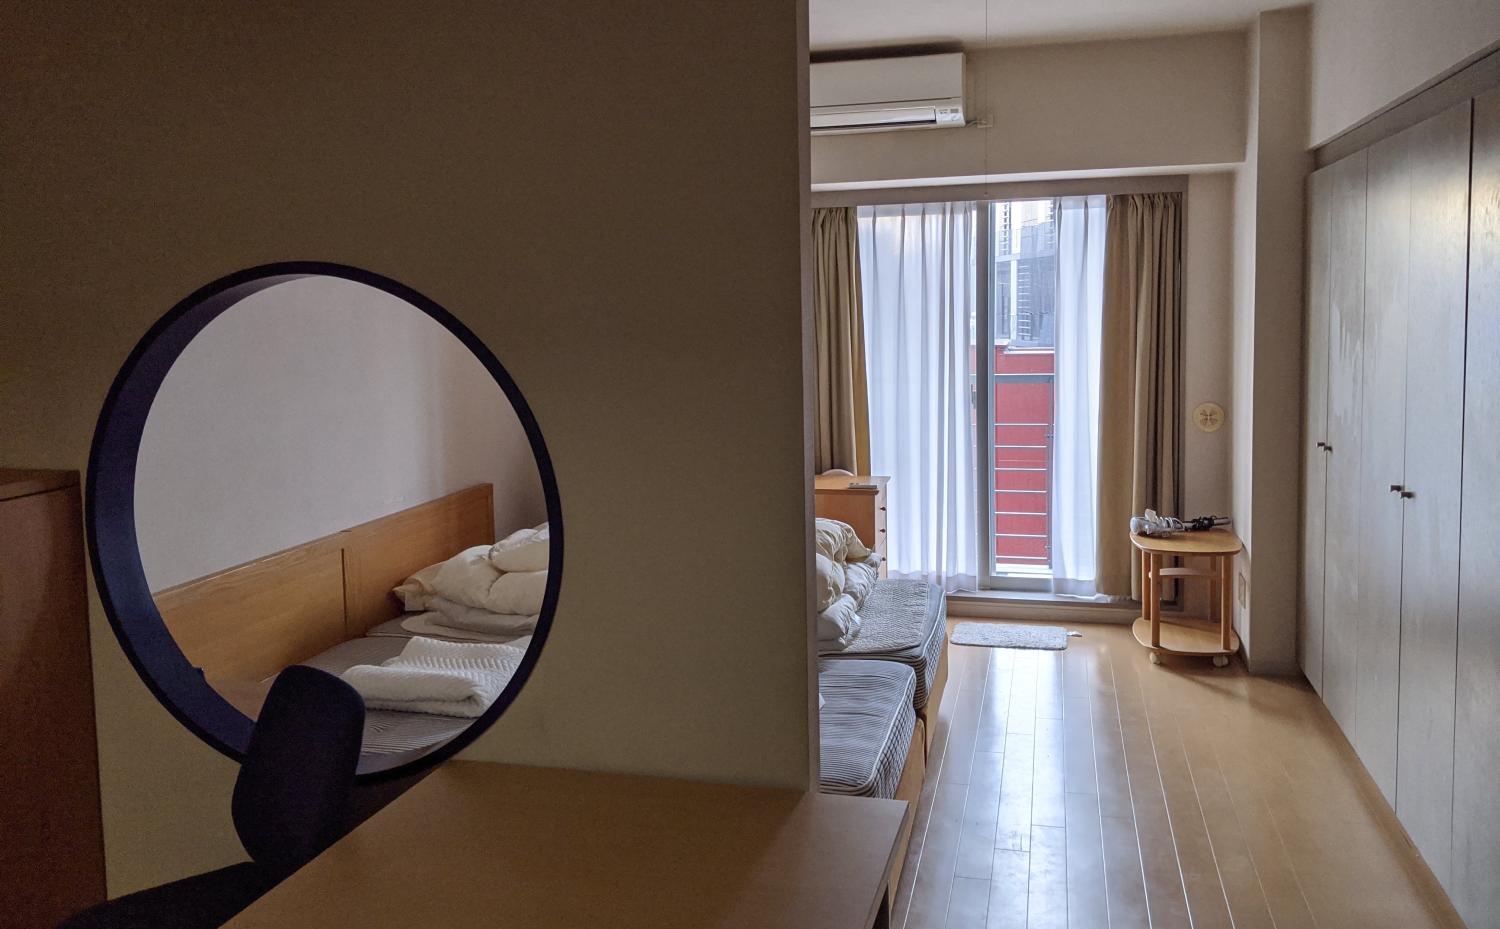 Ein kleines möbiliertes Apartment in Tokyo kann trotzdem 1500€ kosten.